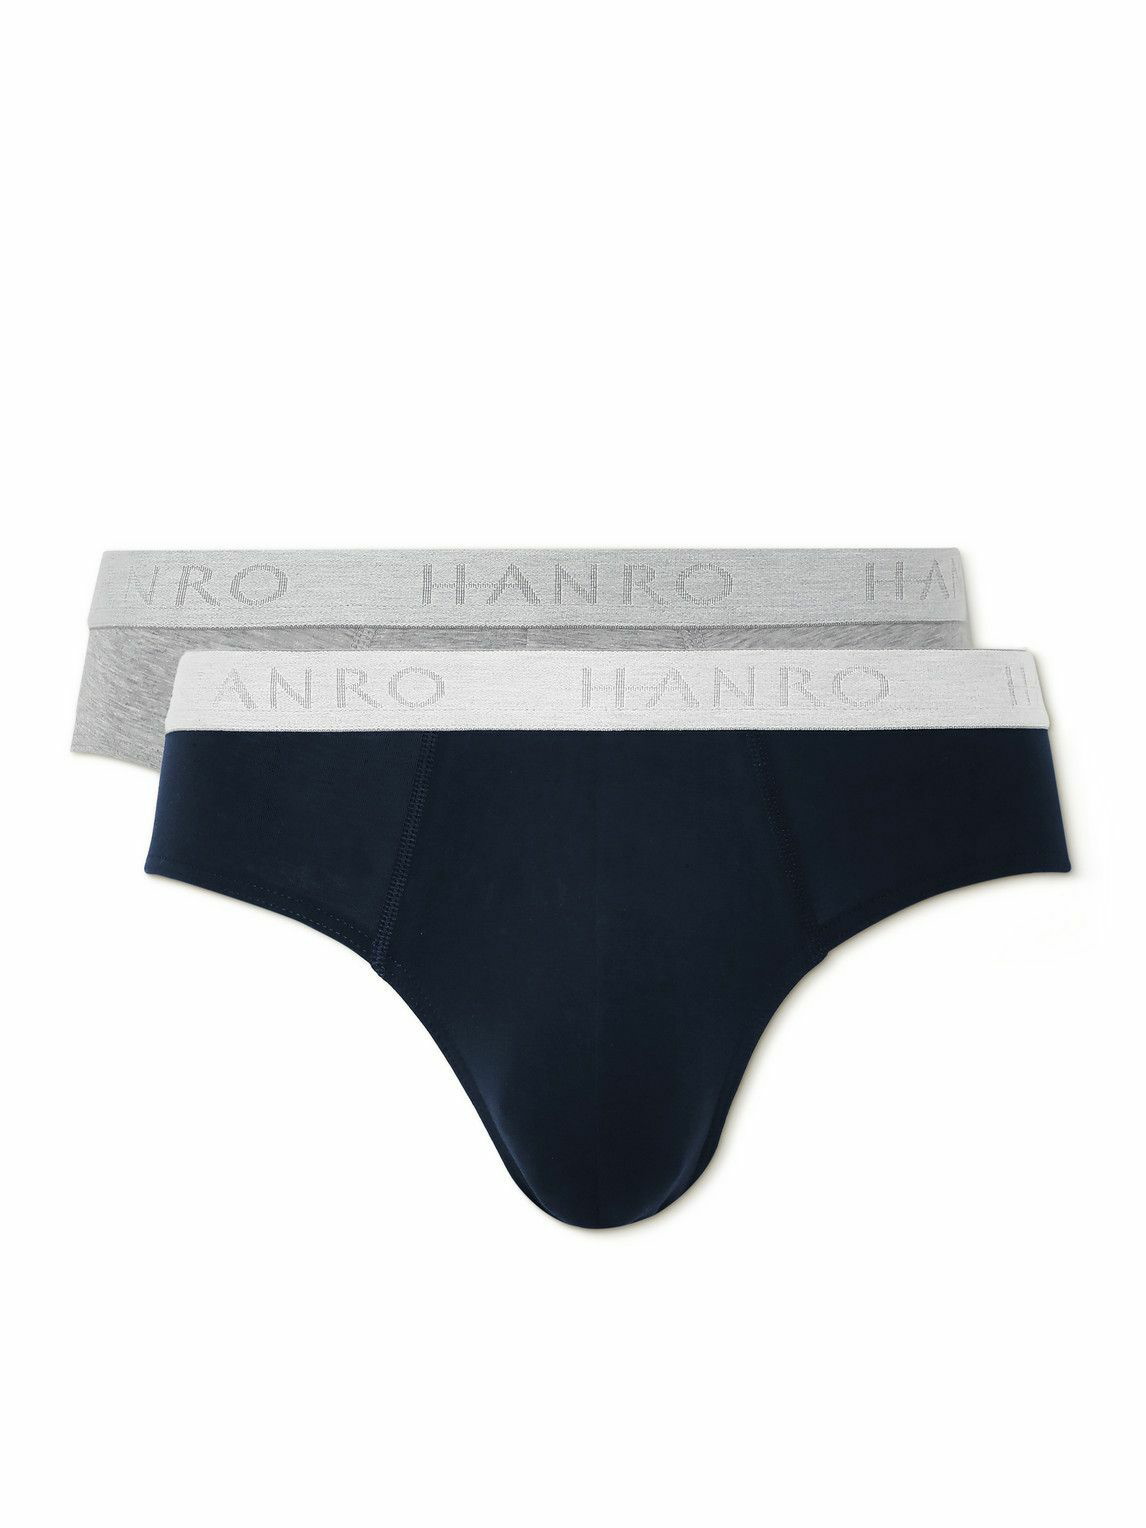 hanro underwear